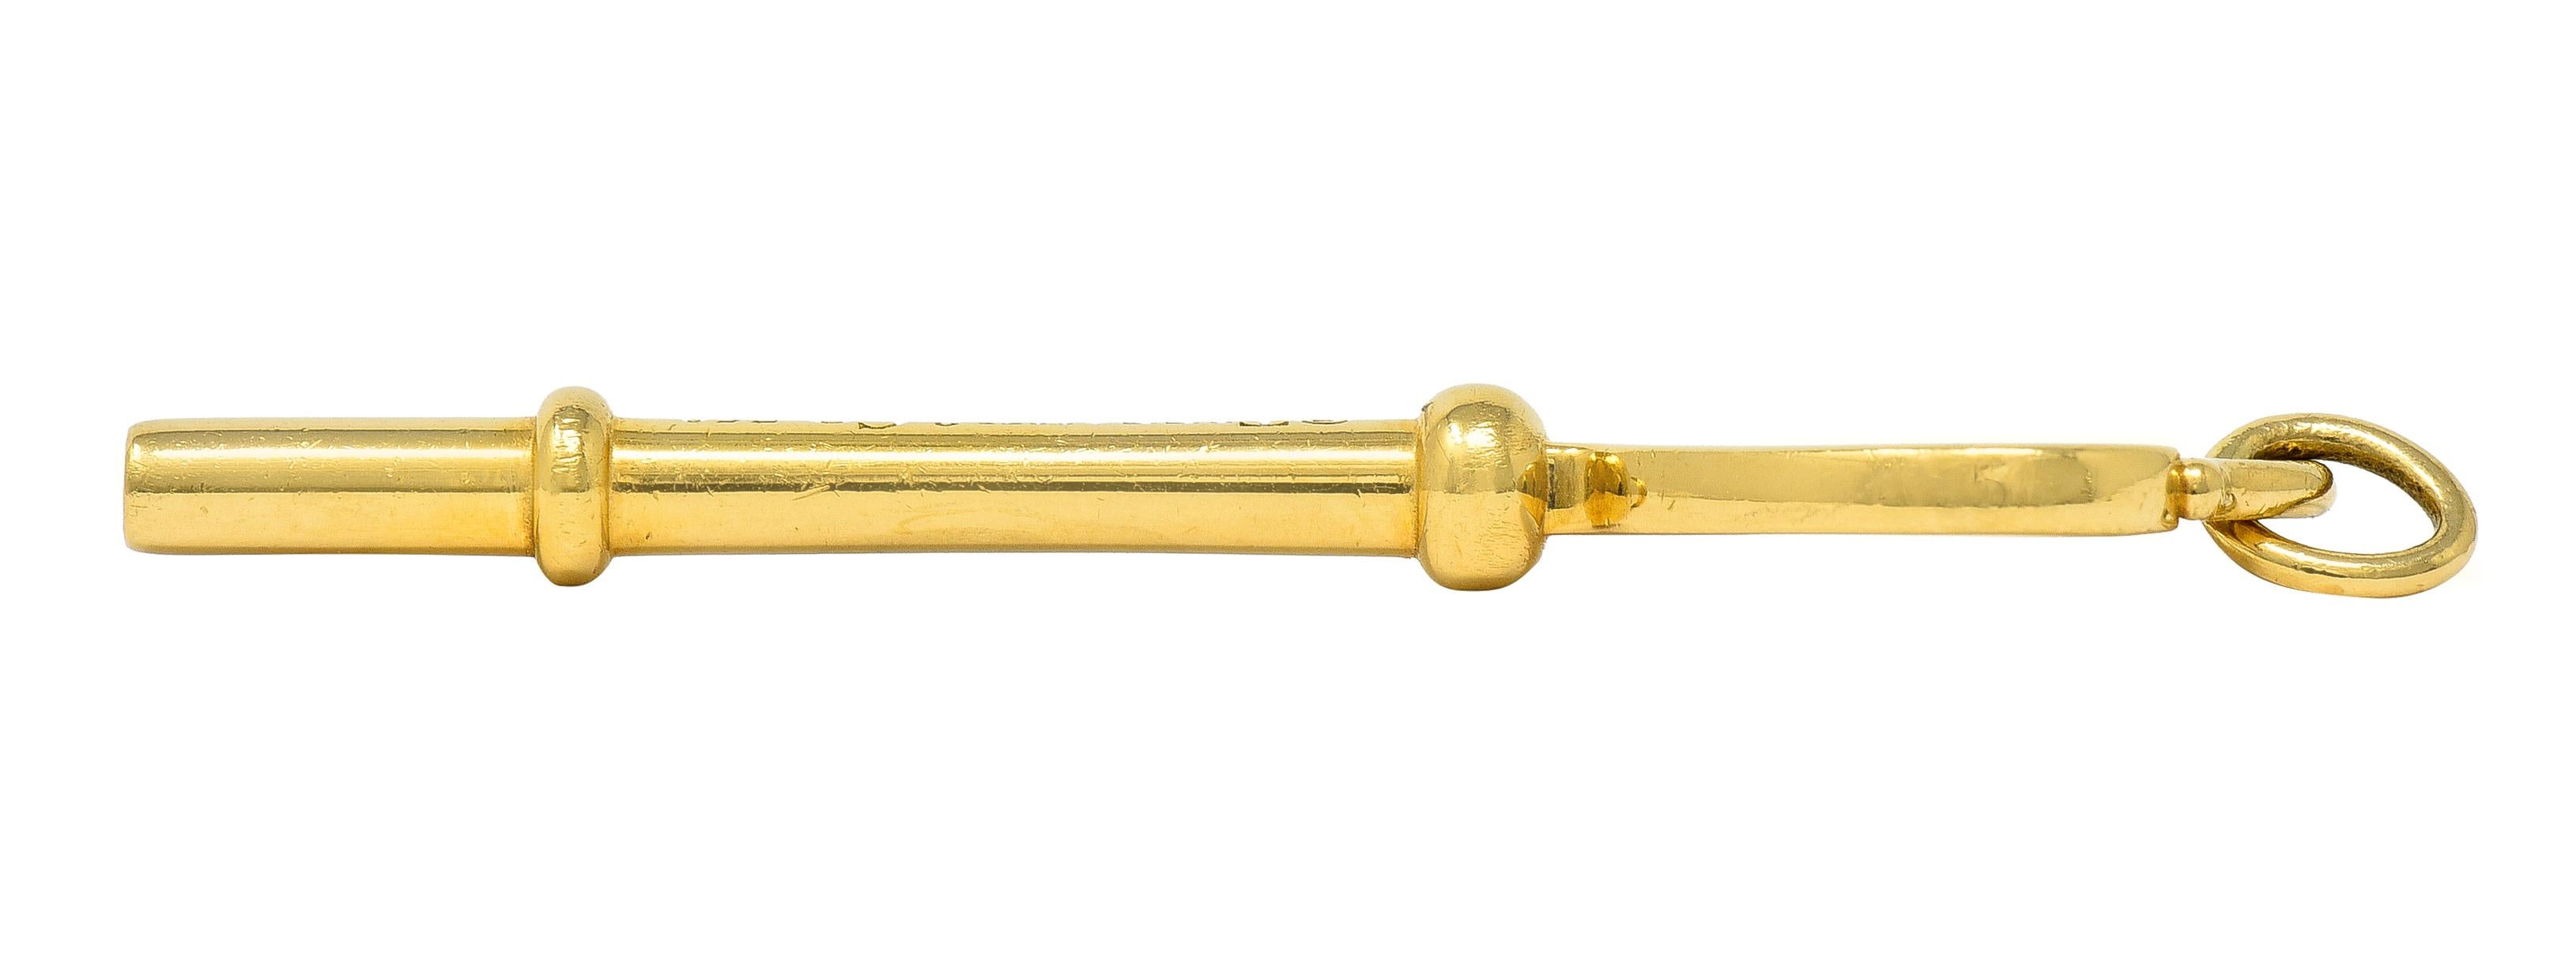 Tiffany & Co. 18 Karat Yellow Gold Tiffany Heart Key Pendant 4